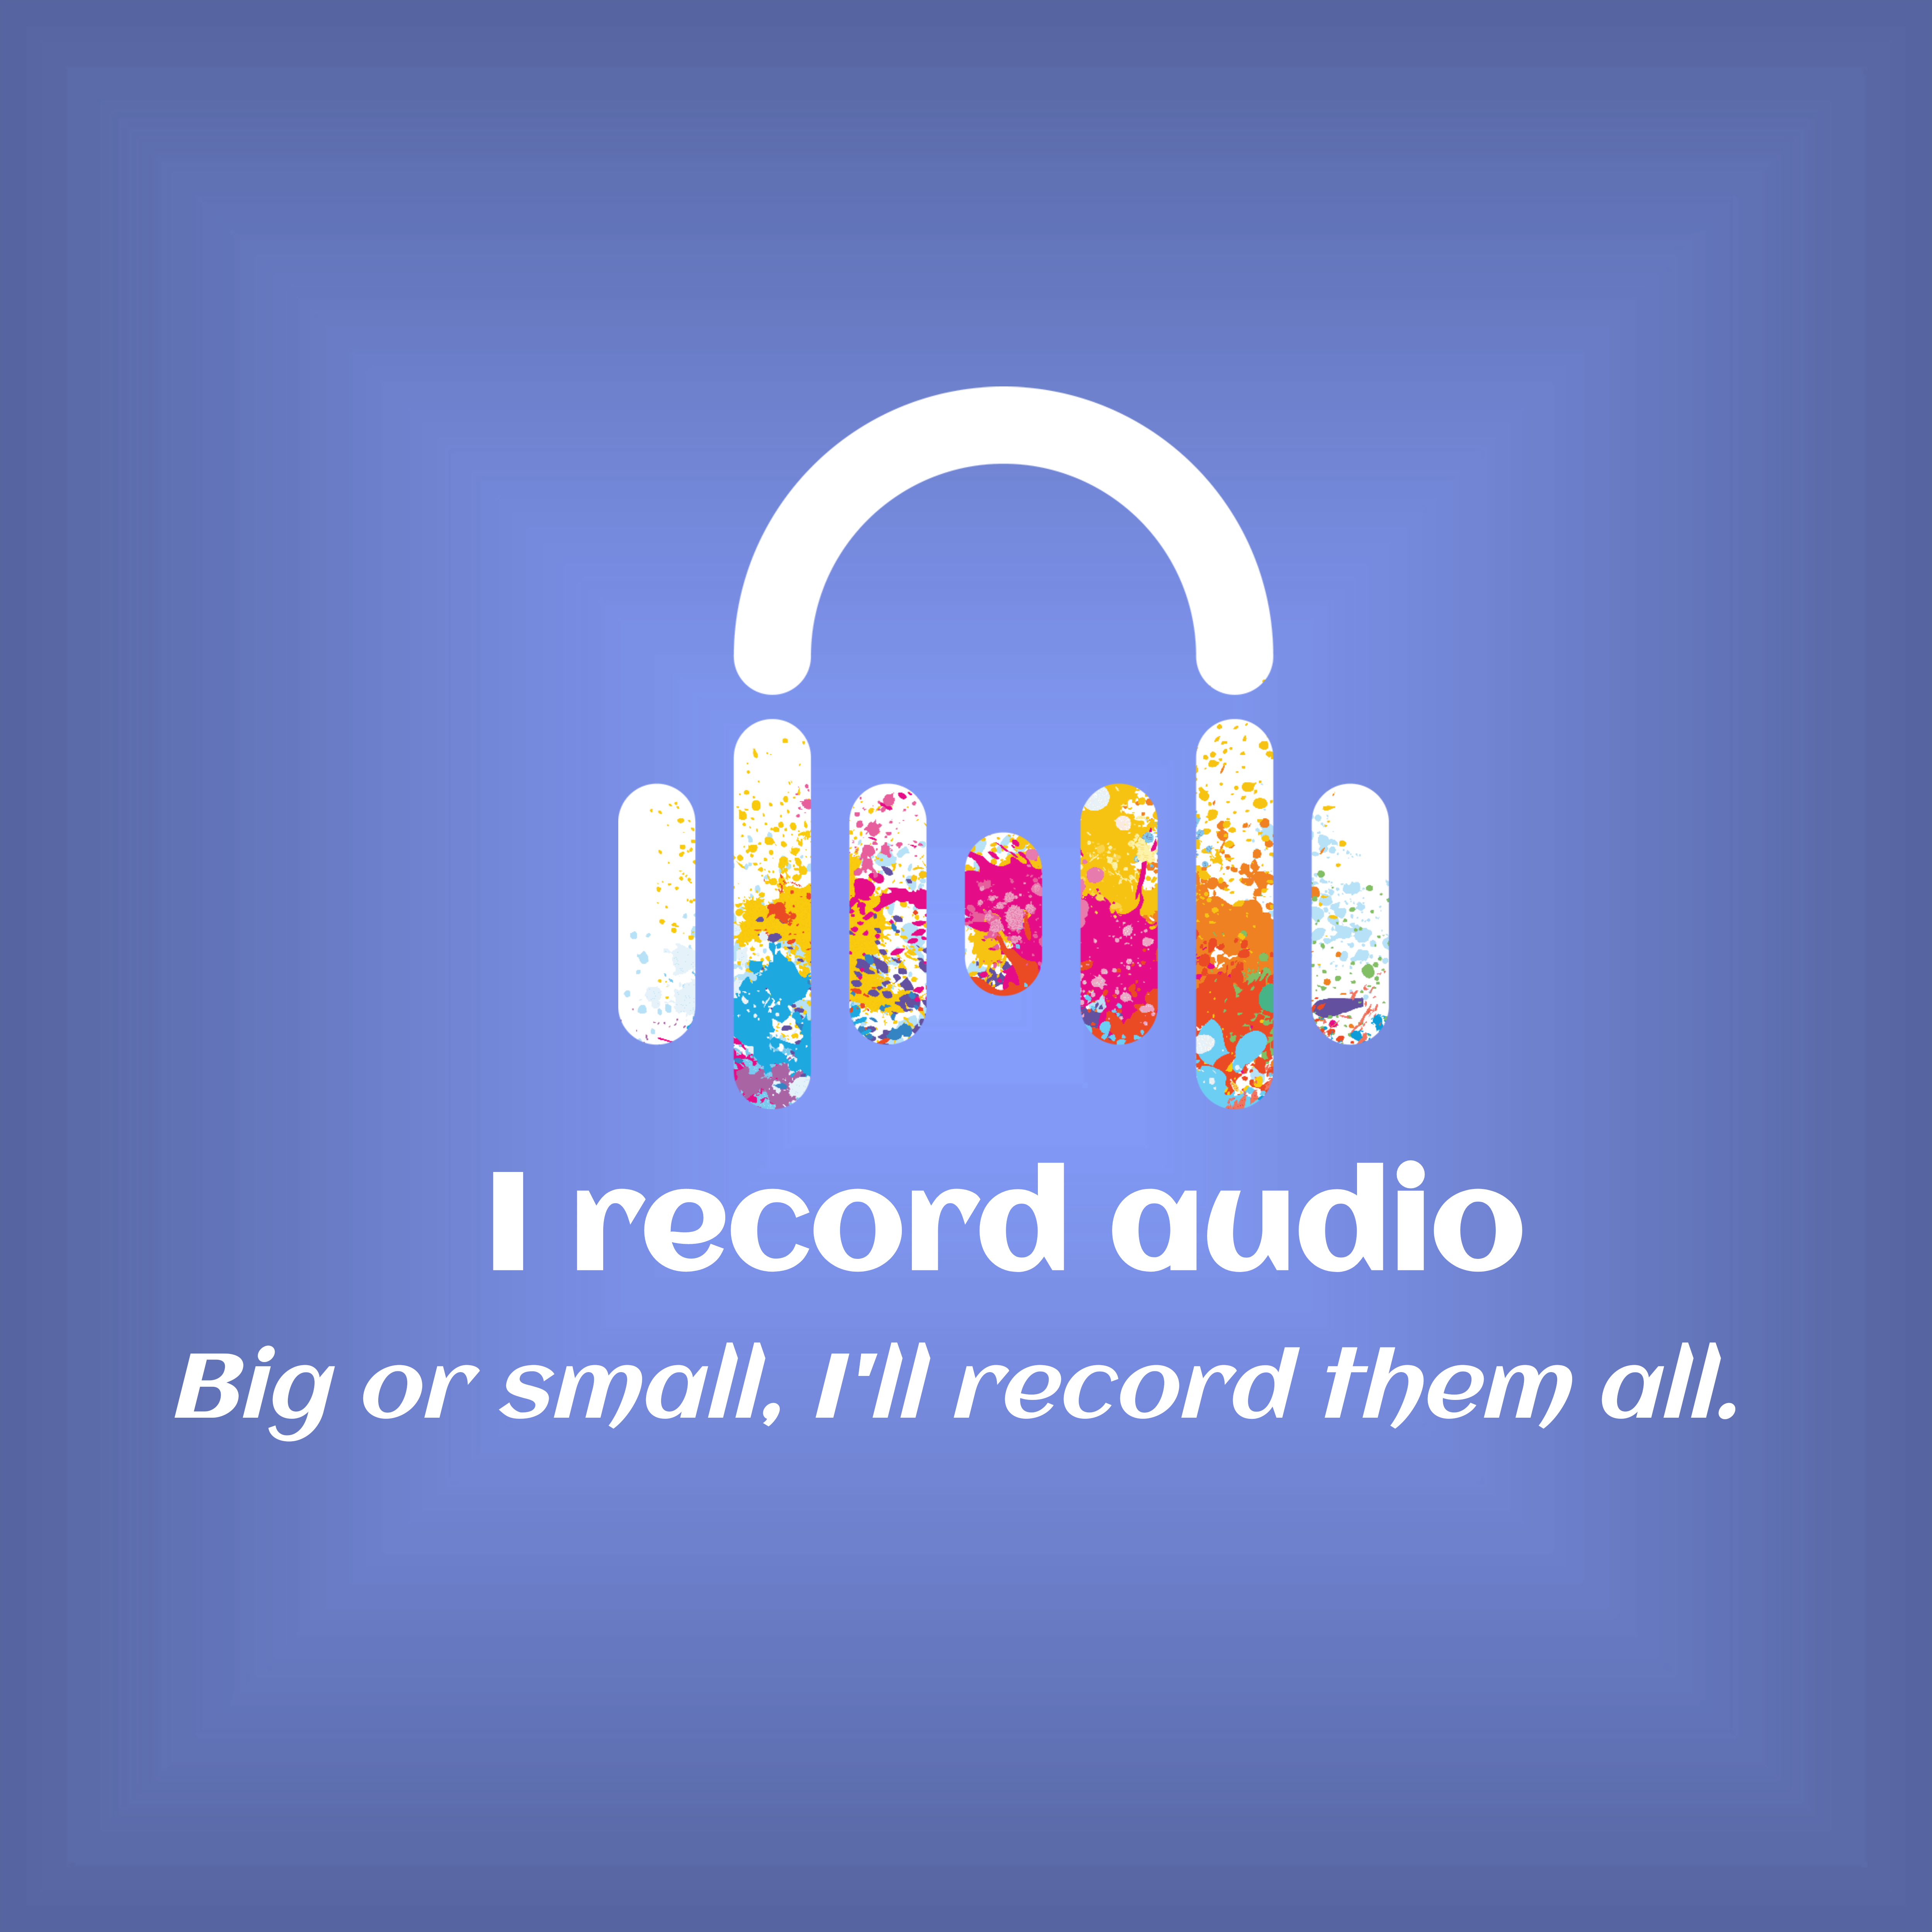 I record audio